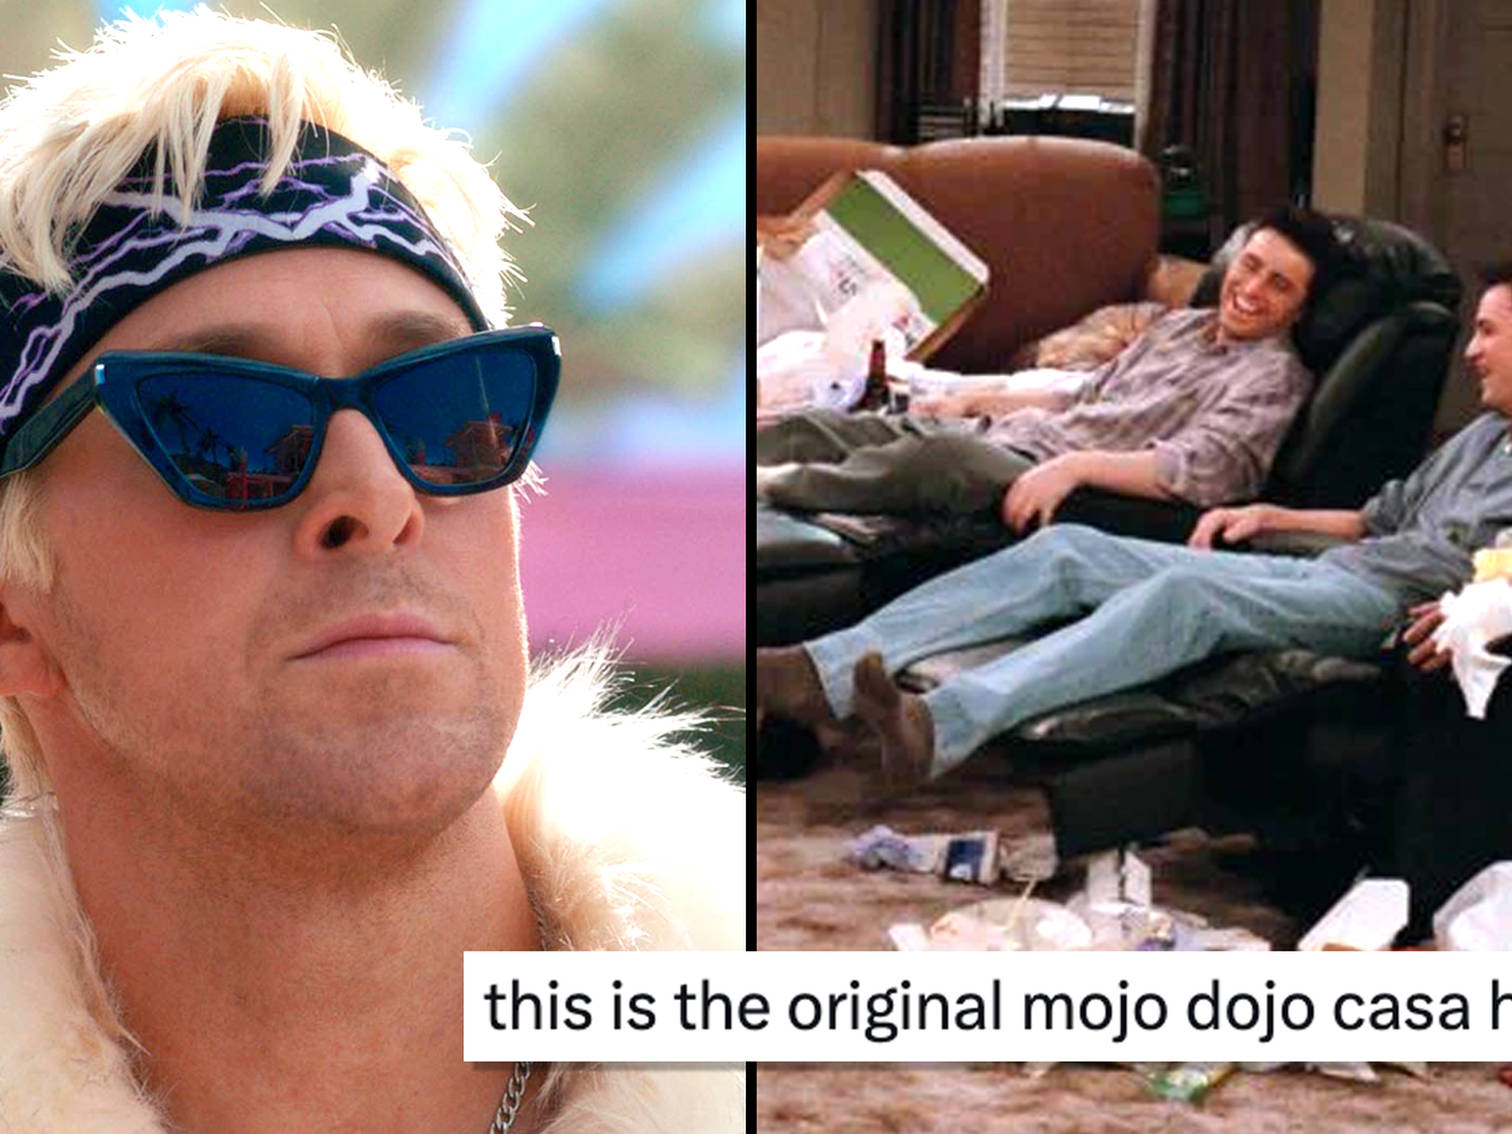 Barbie: Mojo Dojo Casa House memes have taken over the internet